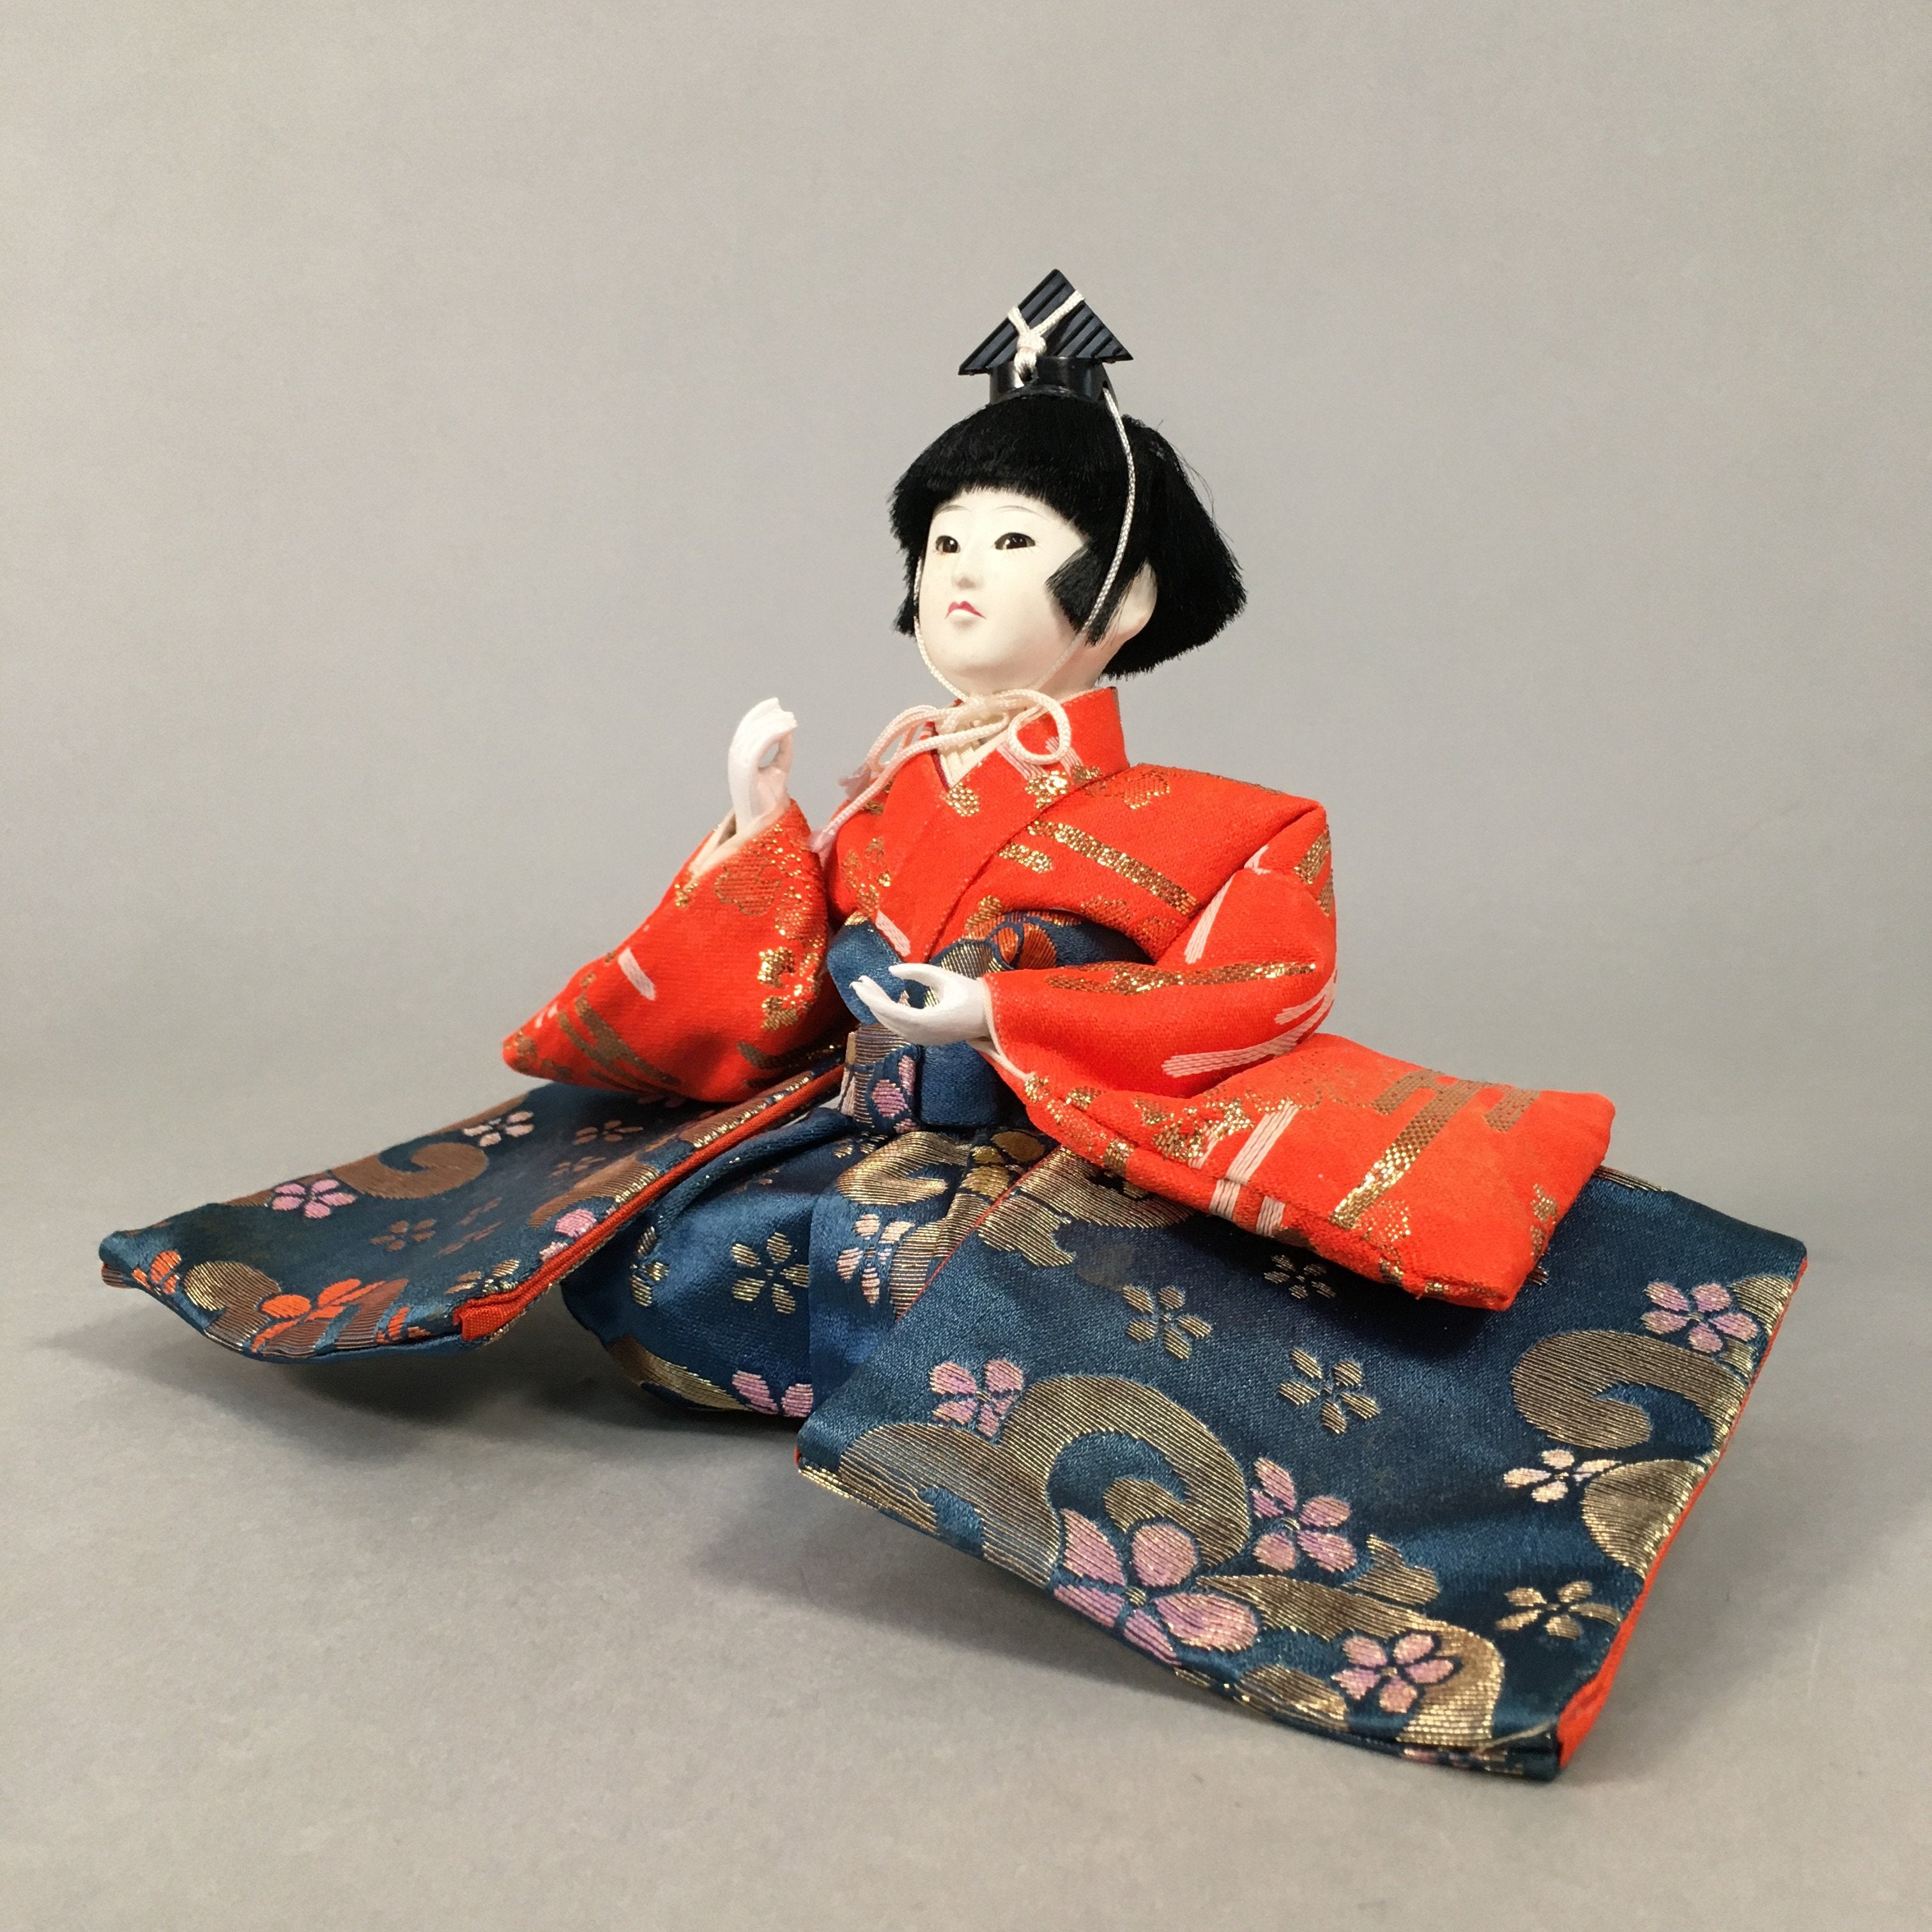 Japanese Hina Doll Kimono Boy Musician Vtg Gonin Bayashi Girls Day Decor ID361